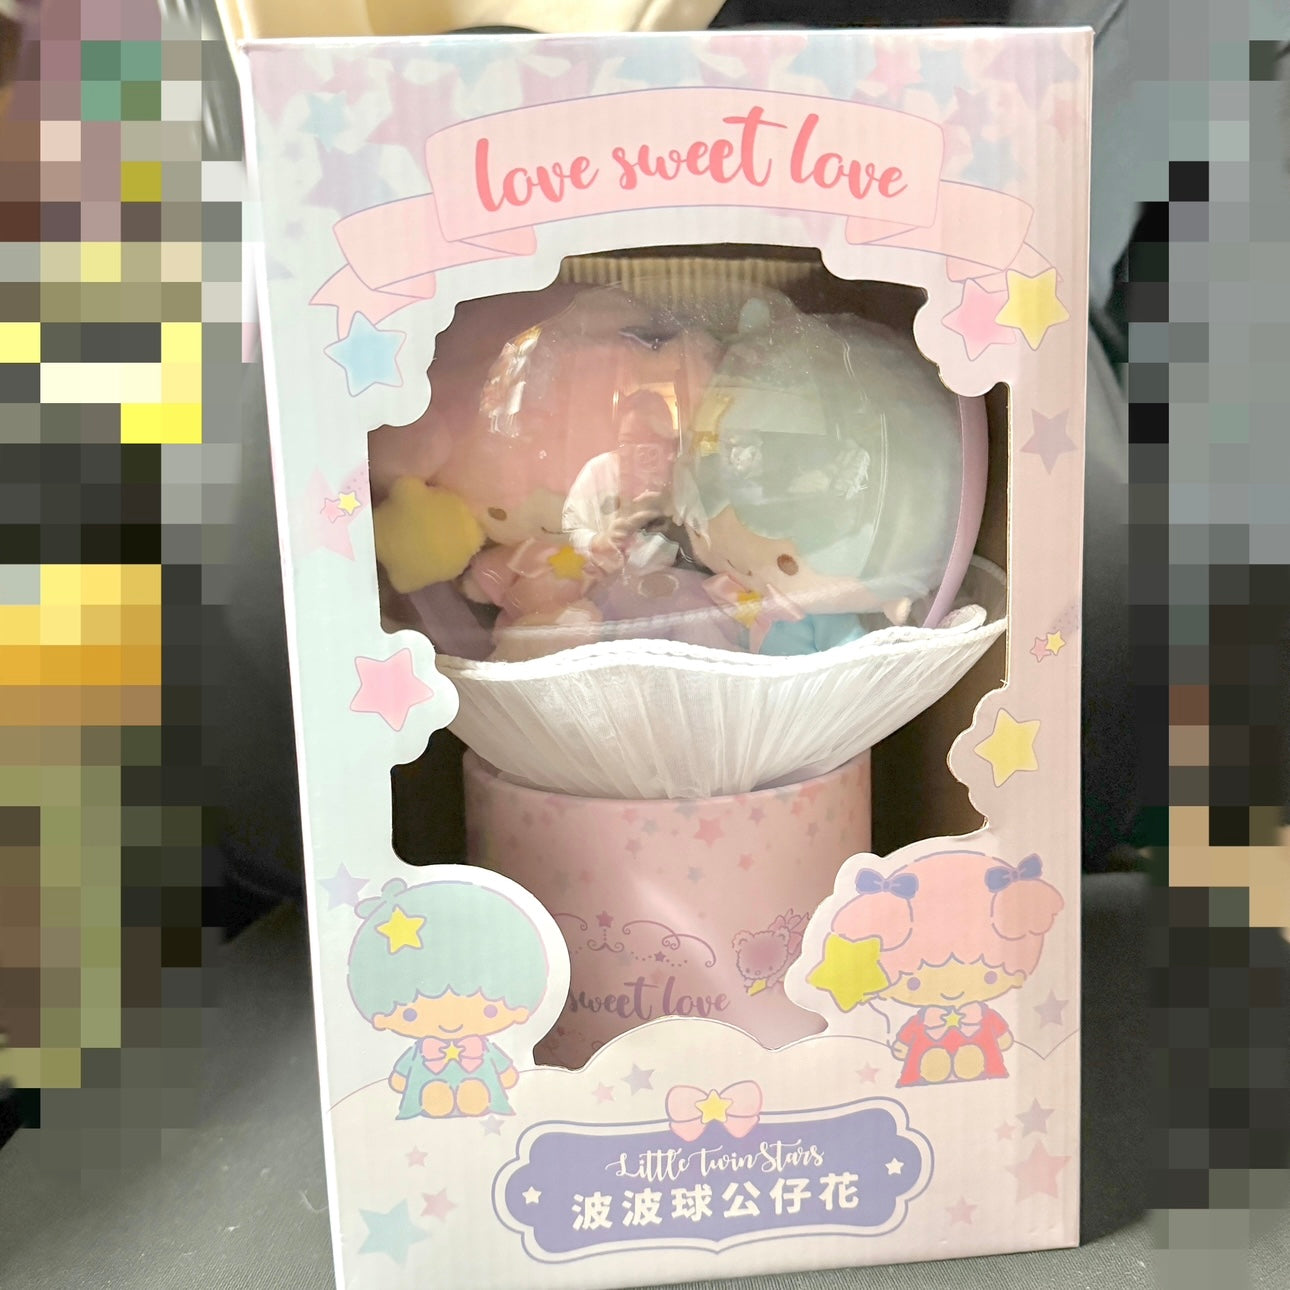 Sanrio x 7-11 Little Twins Star Valentine Limited Edition | Love Sweet Love Flowers Bouquet Gift Box - Valentine Wedding Gift 